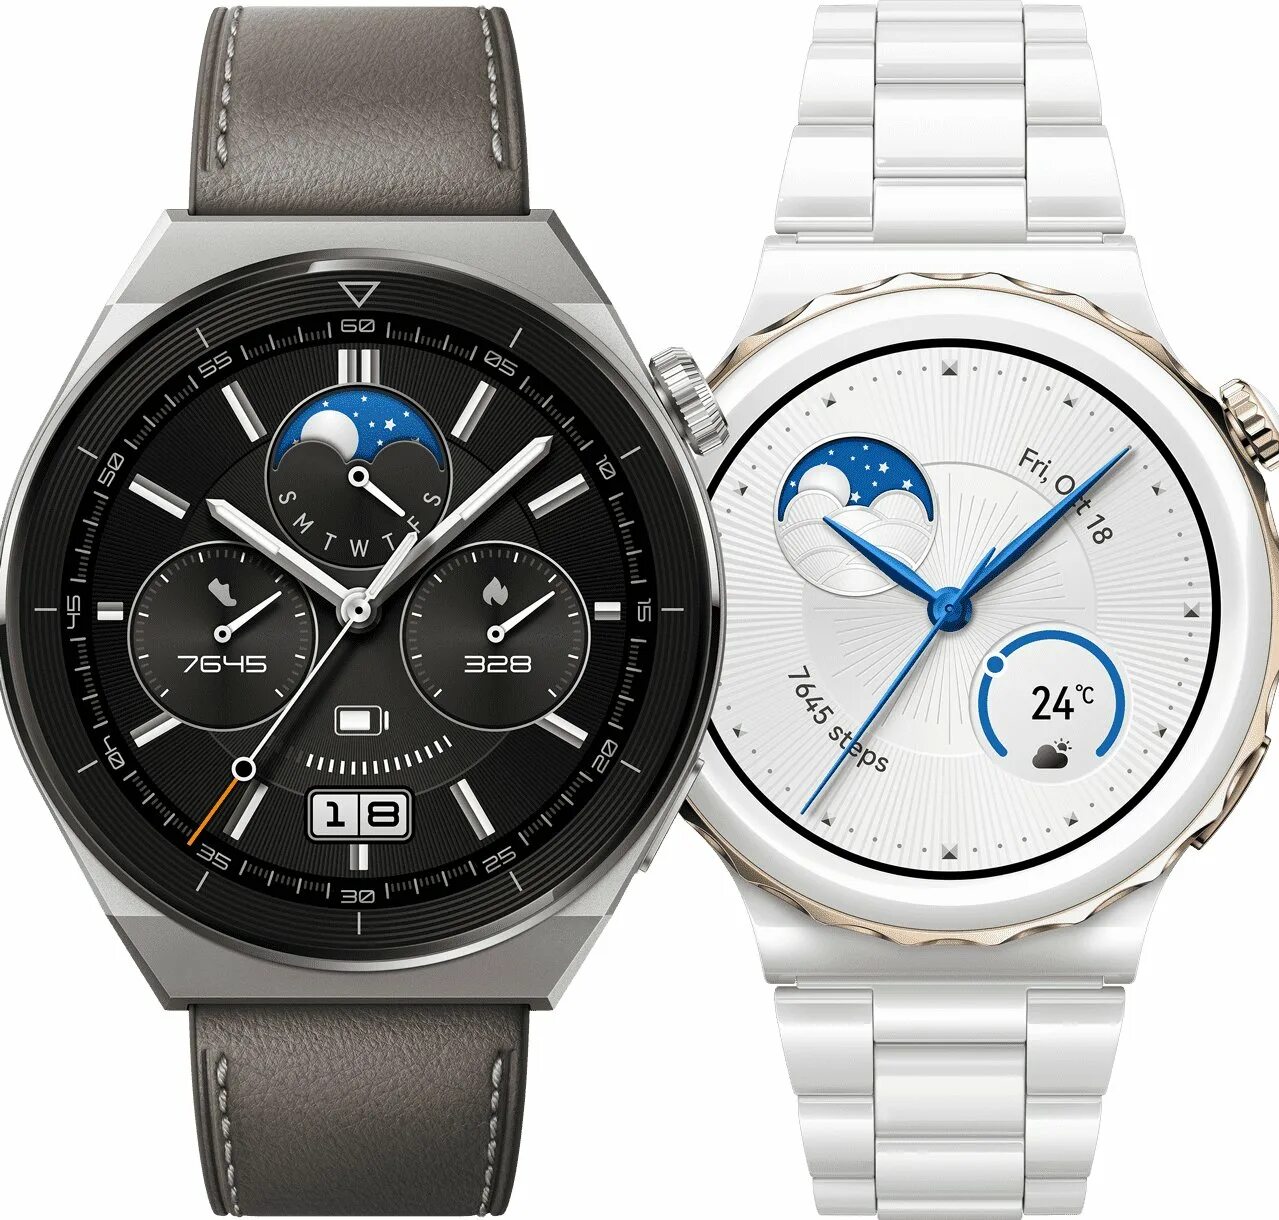 Huawei watch 2022. Huawei watch gt 3. Часы Huawei gt3. Часы Huawei watch gt 3 Pro. Часы хуавей модели